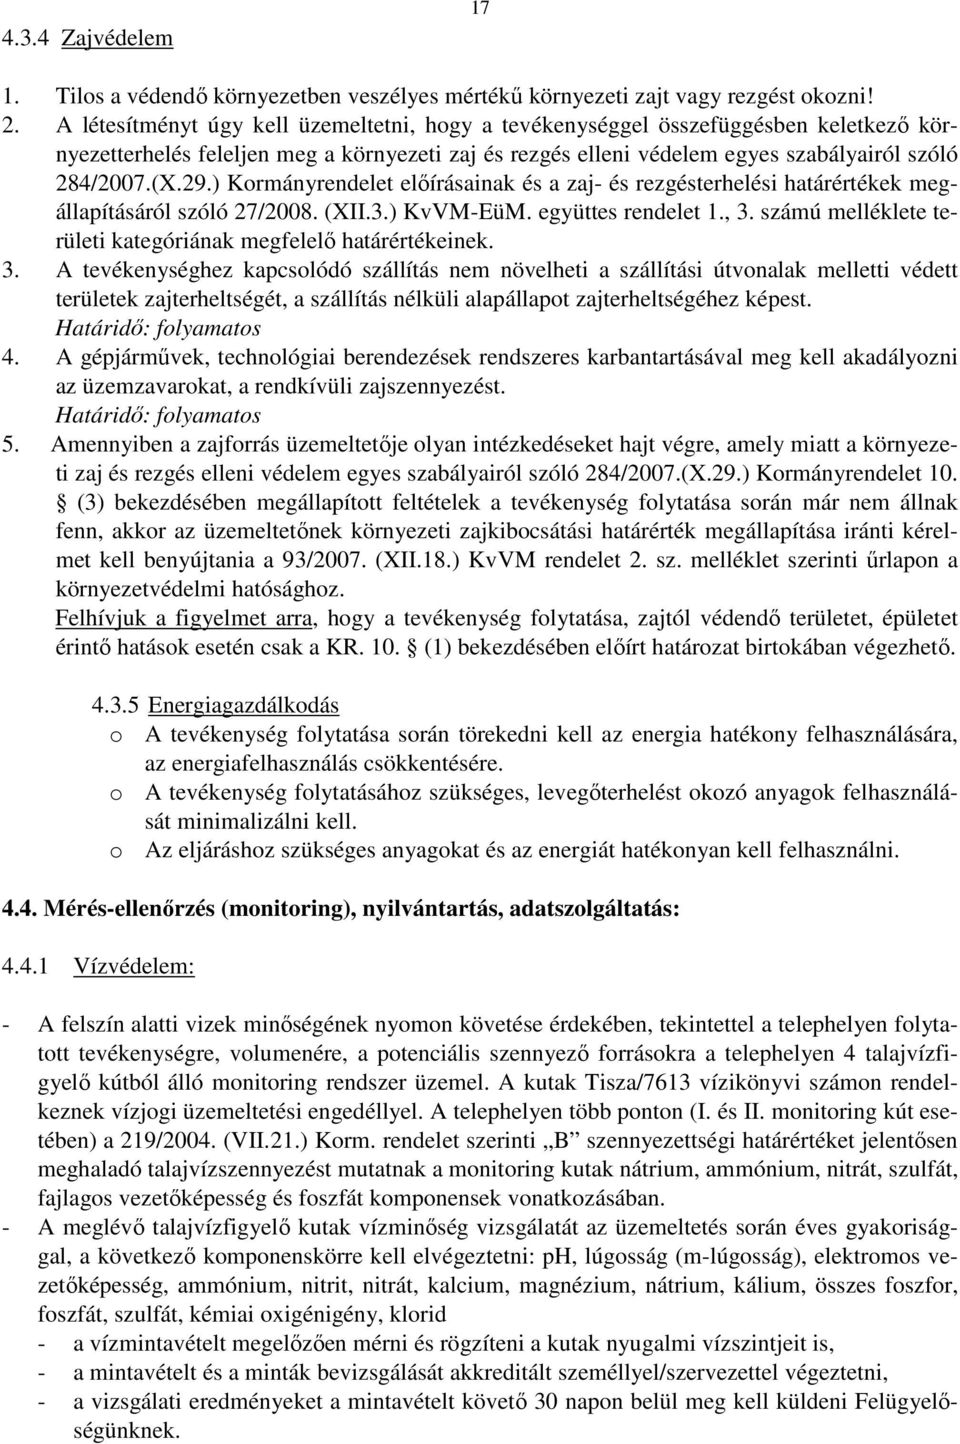 ) Kormányrendelet előírásainak és a zaj- és rezgésterhelési határértékek megállapításáról szóló 27/2008. (XII.3.) KvVM-EüM. együttes rendelet 1., 3.